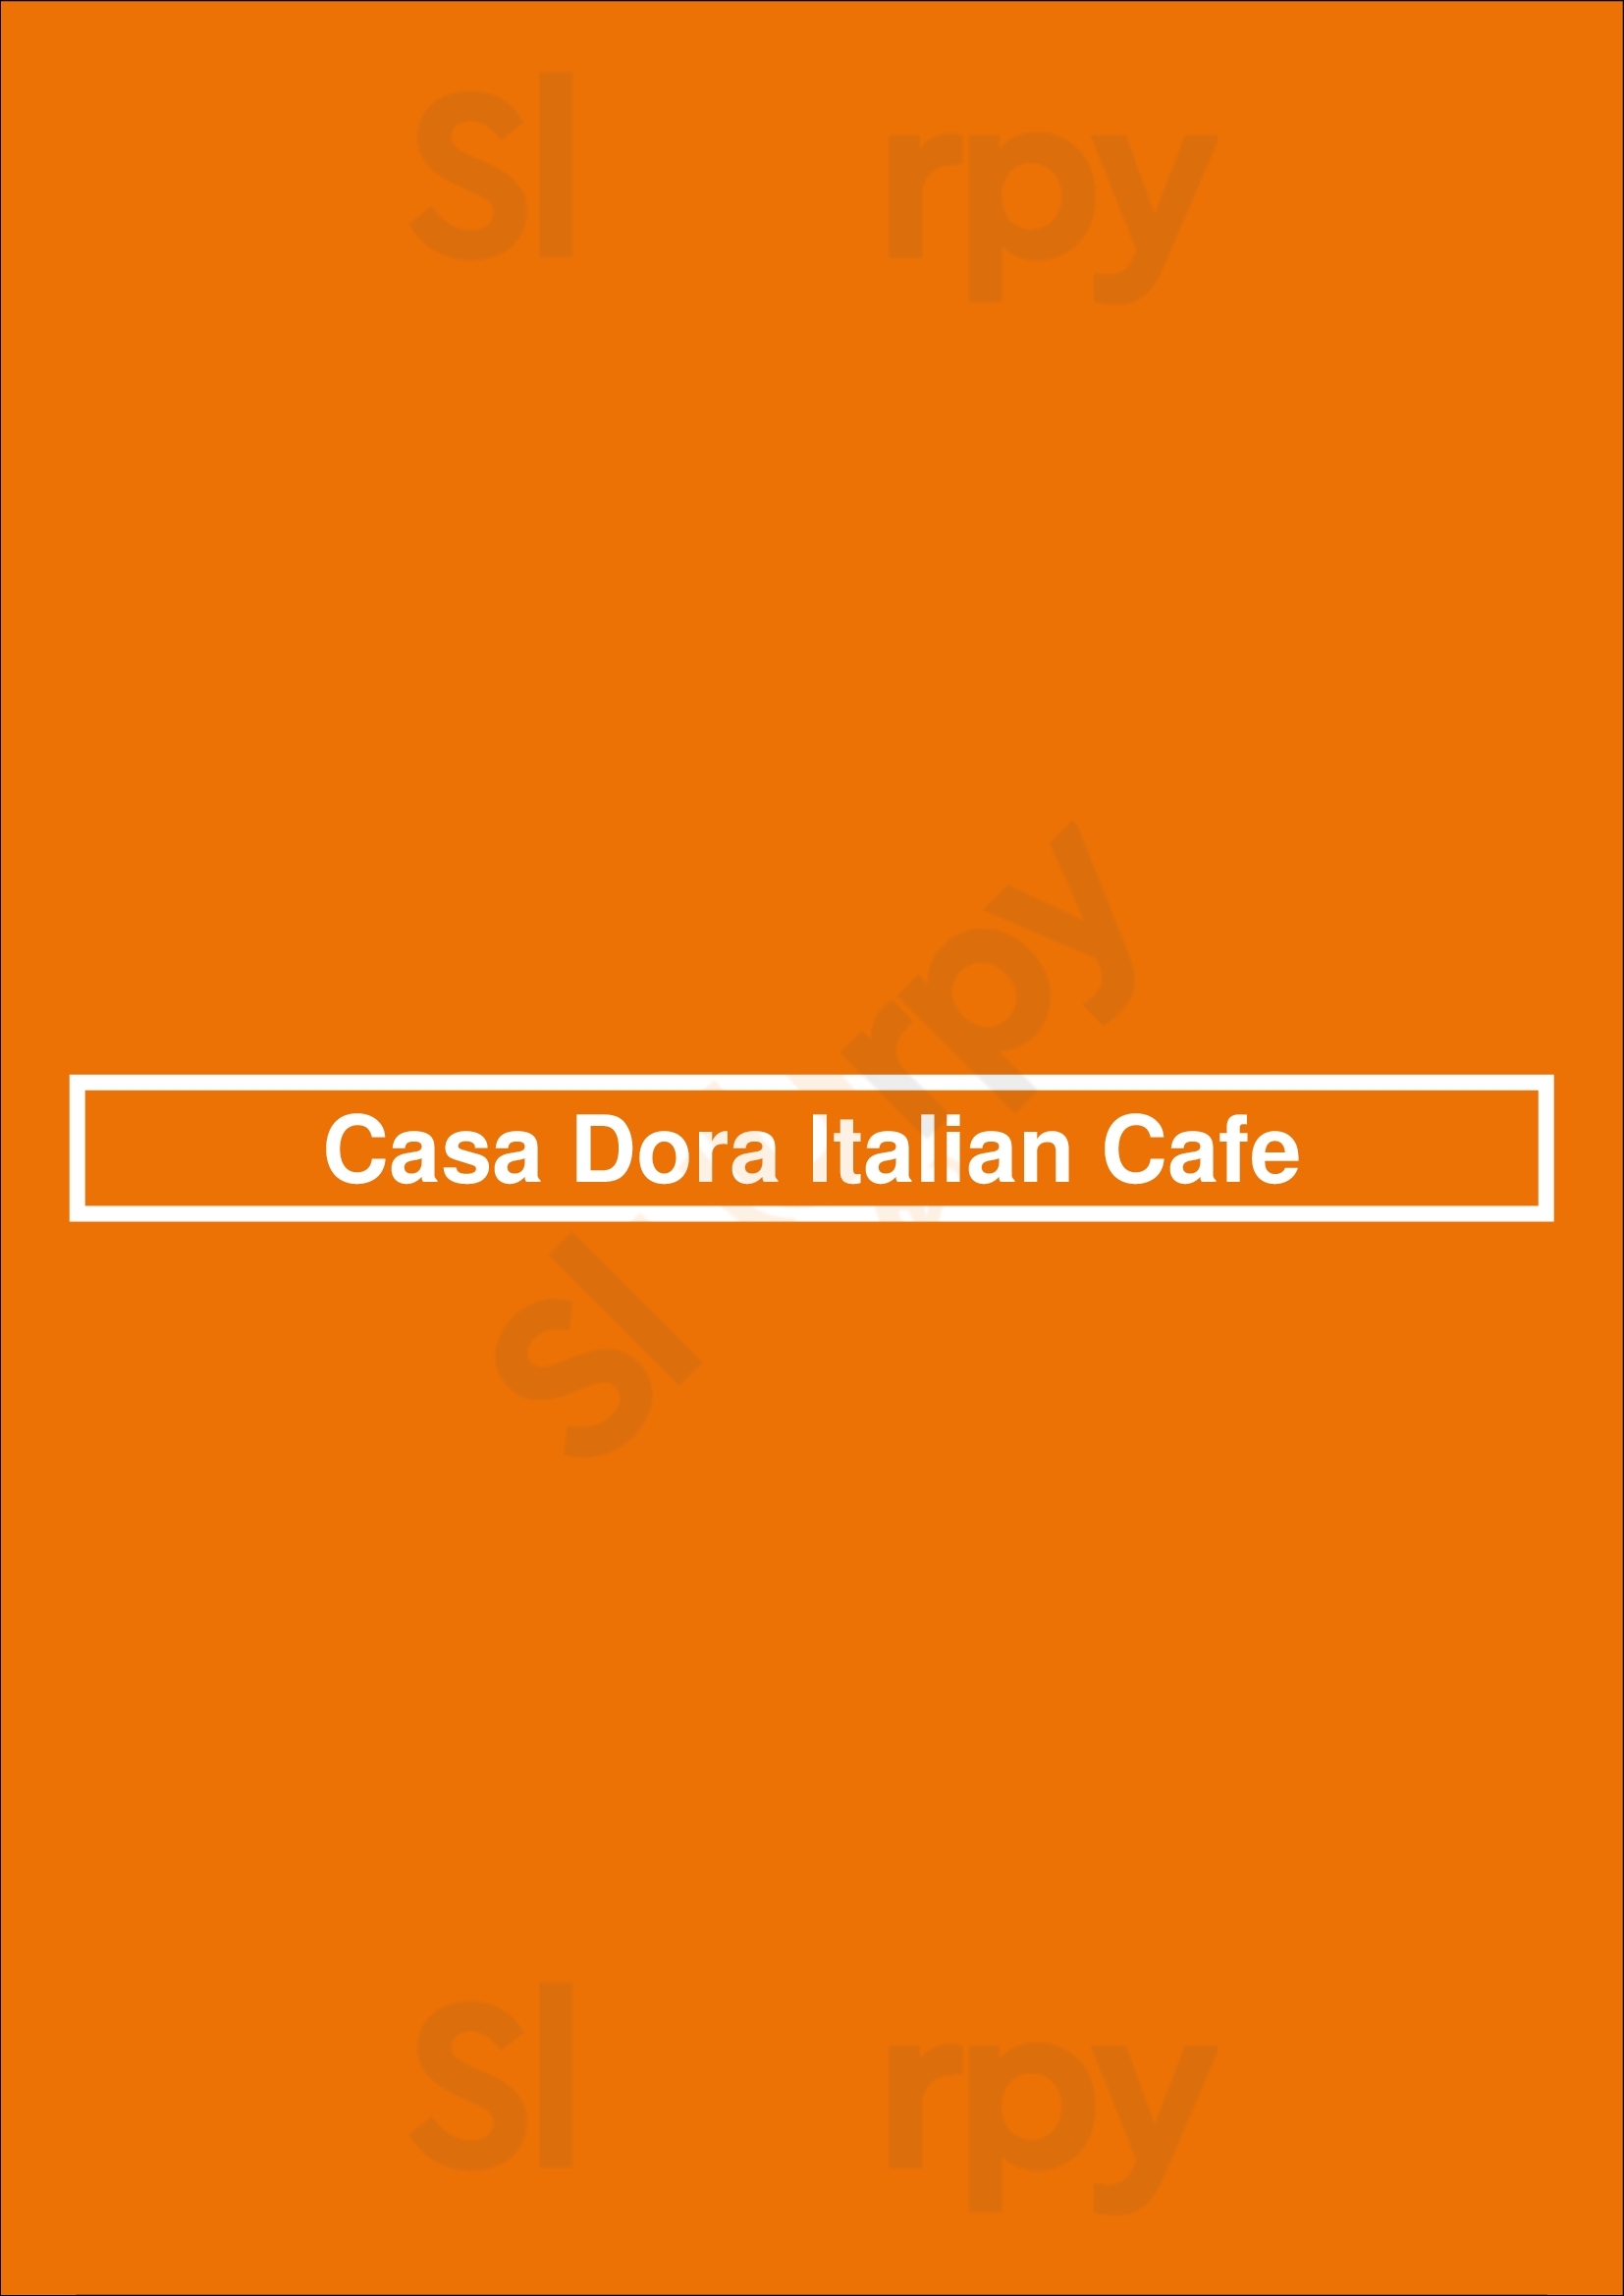 Casa Dora Italian Cafe Jacksonville Menu - 1